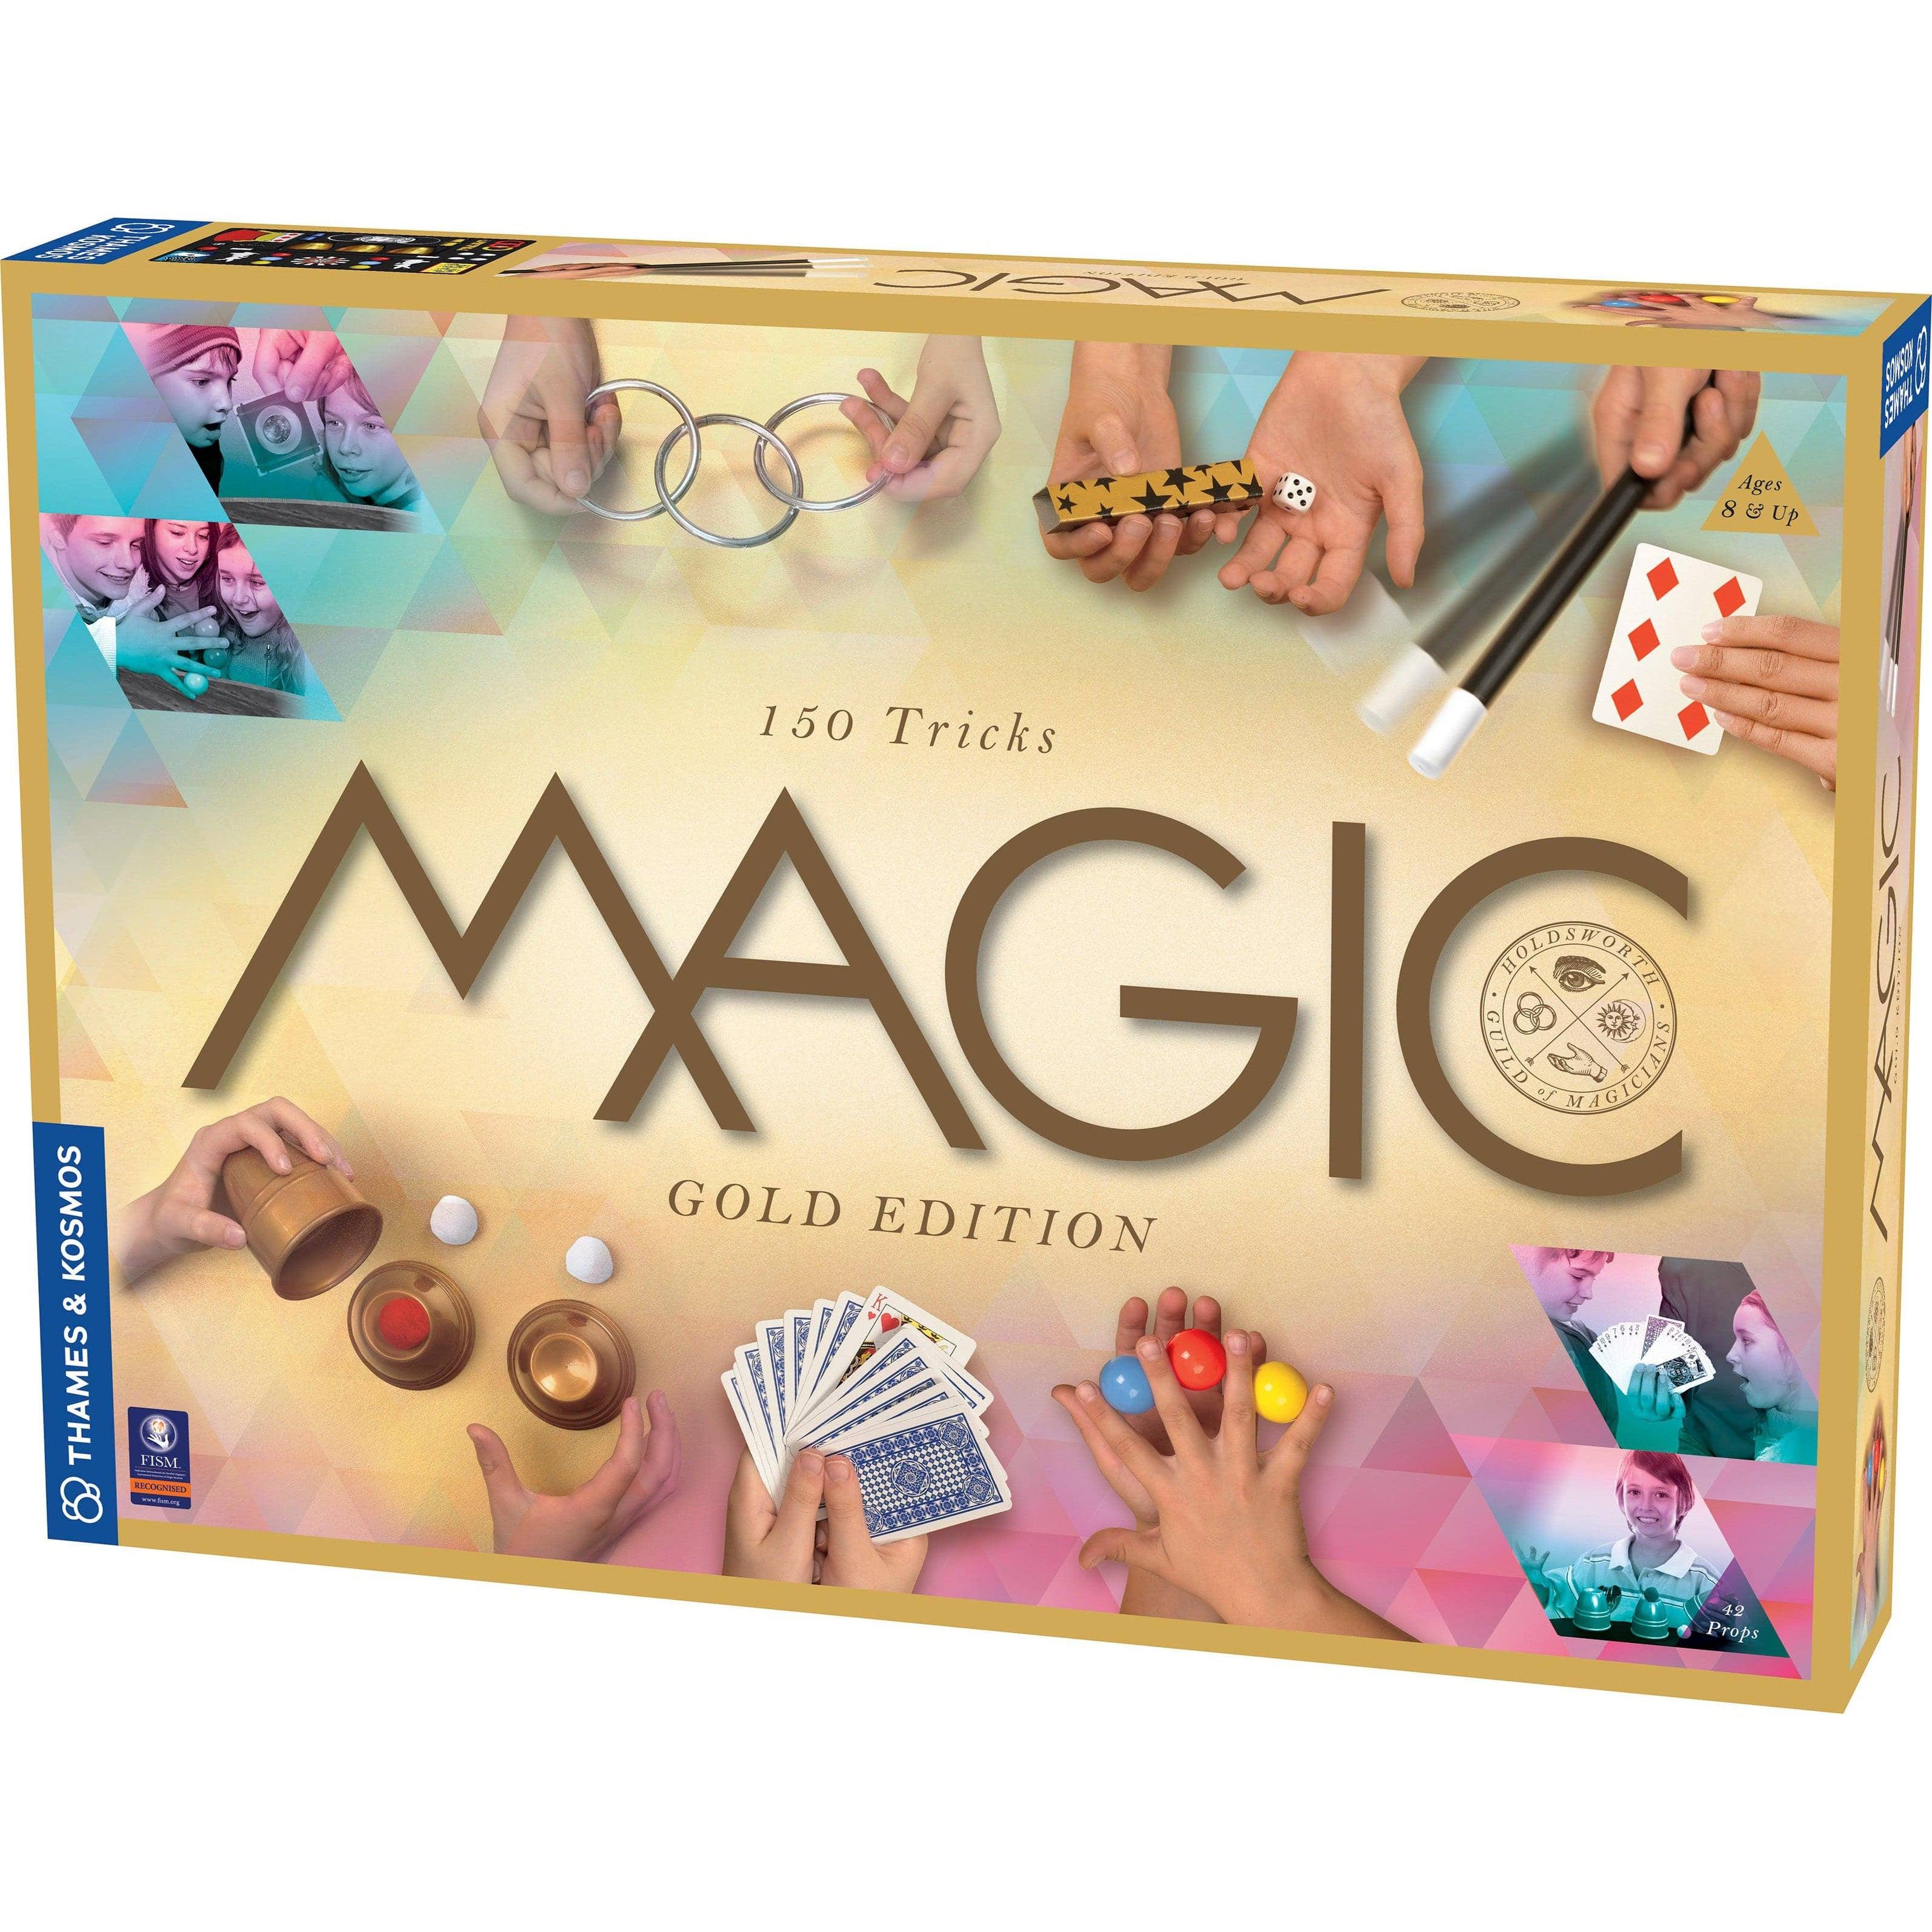 Thames & Kosmos Magic Gold Edition Playset